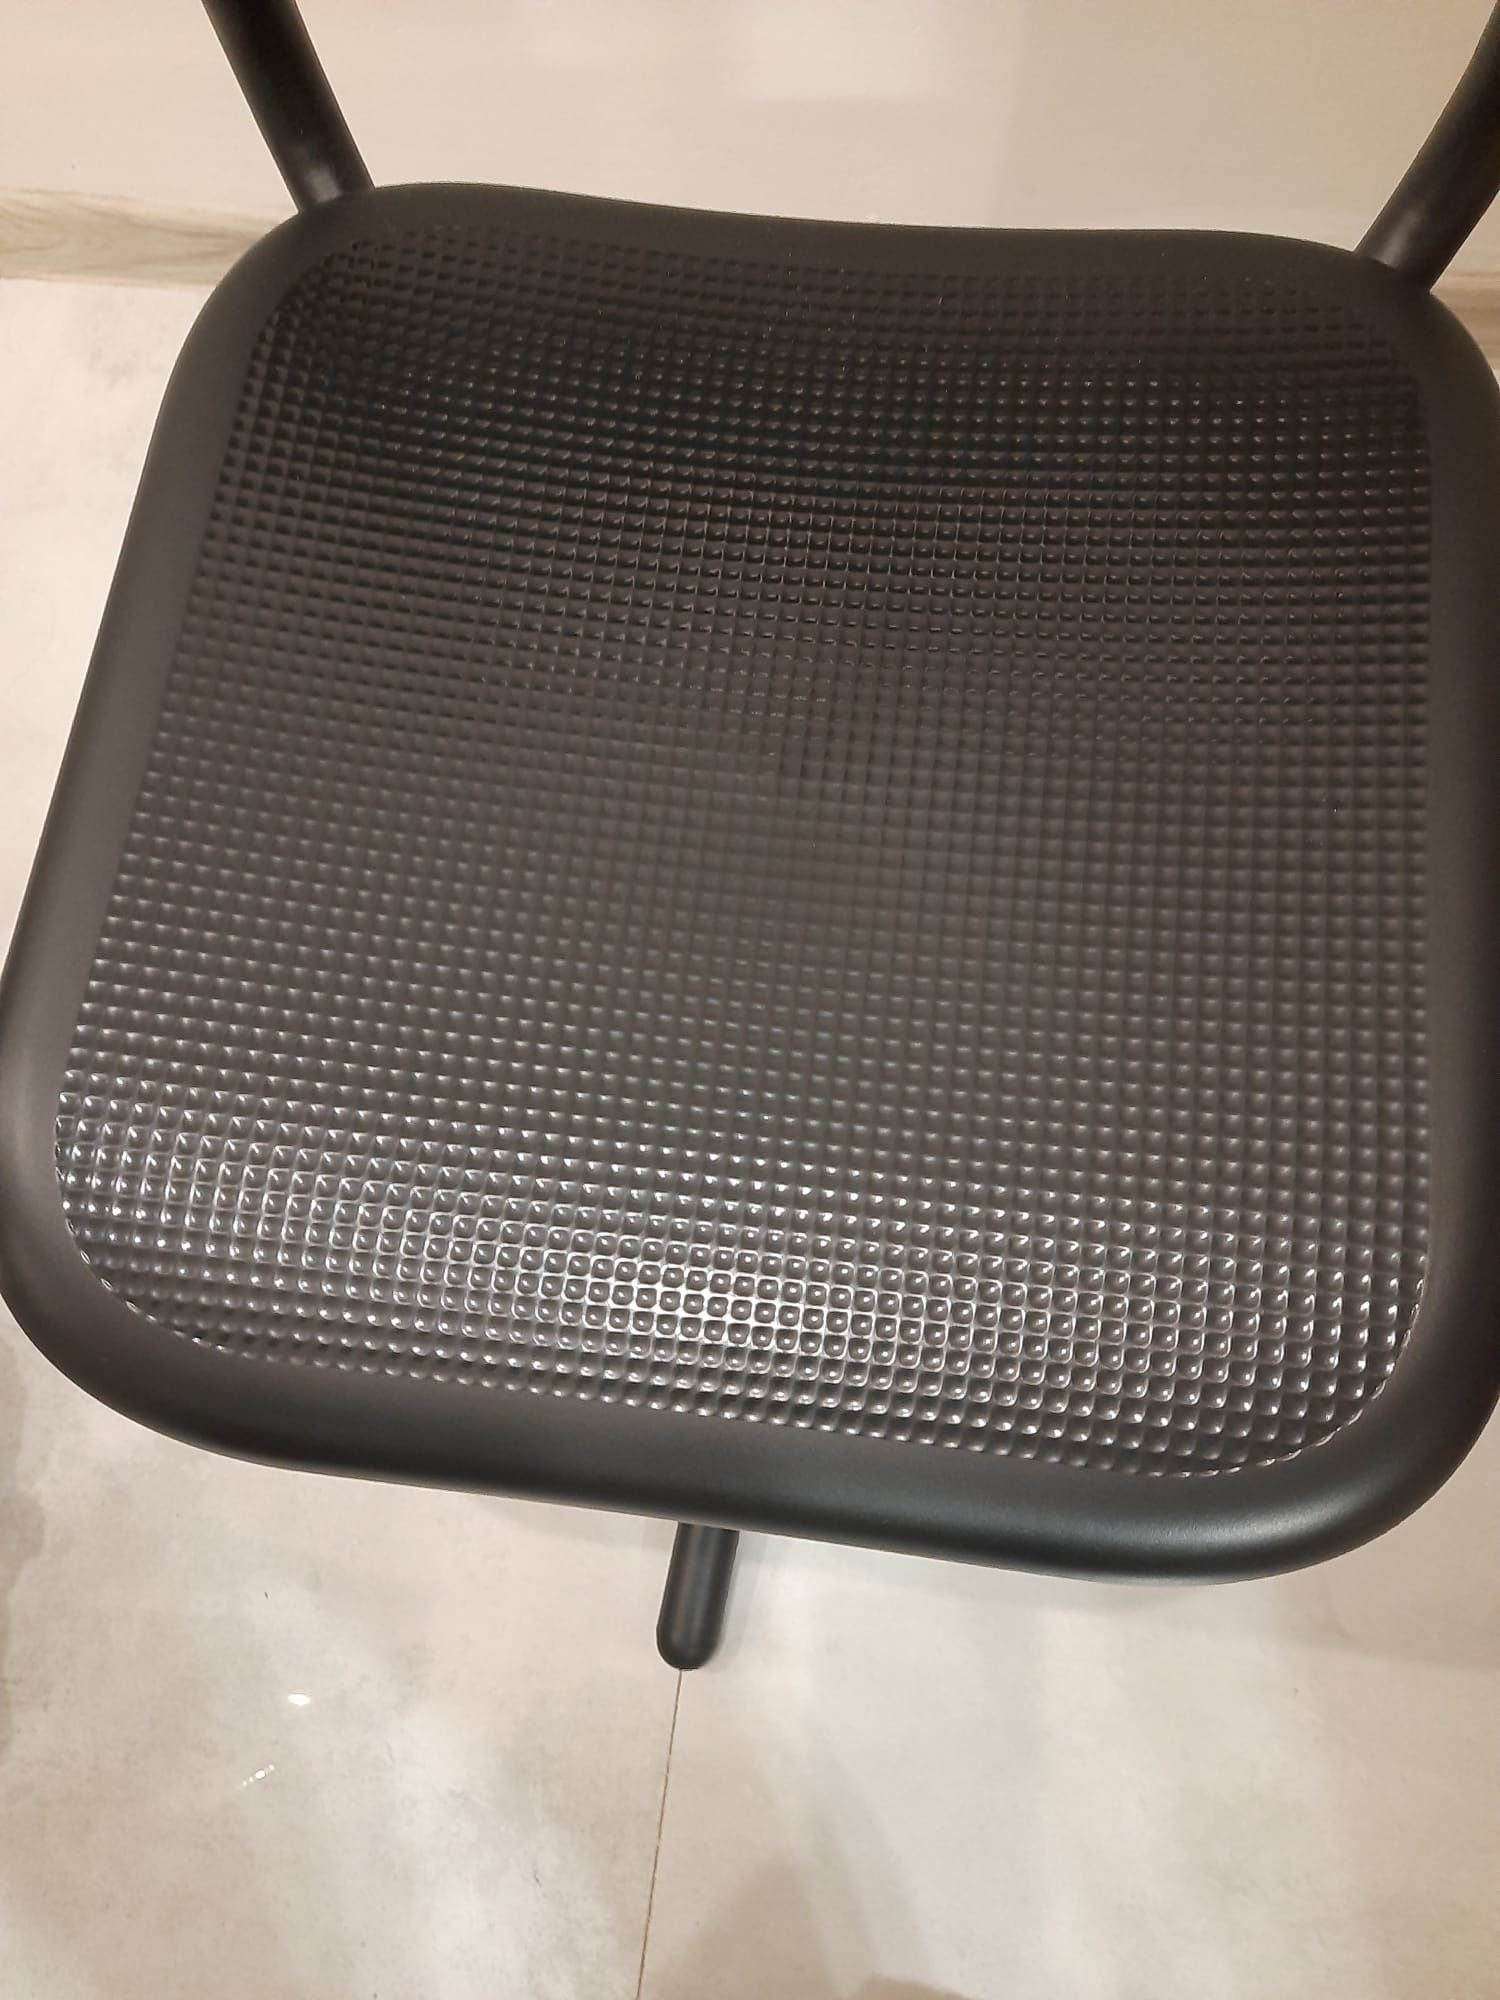 Krzesło Biurowe w stanie idealnym